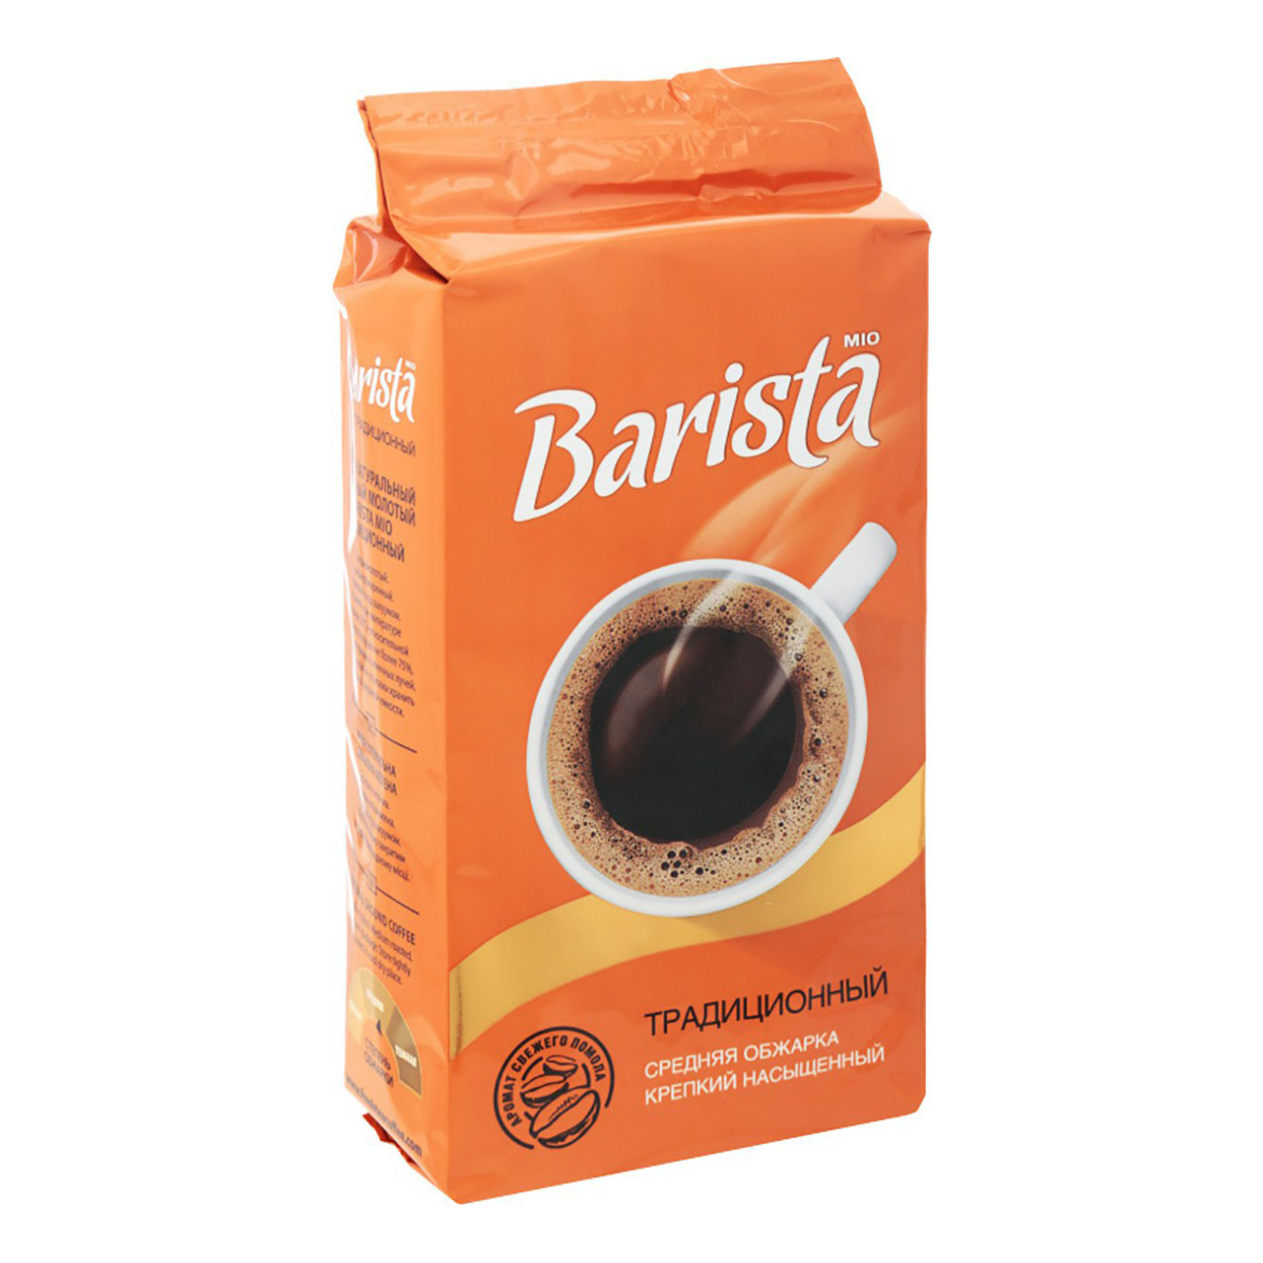 Кофе barista молотый. Кофе бариста Мио молотый. Кофе Barista mio 250 г молотый. Barista молотый кофе в магните. Конфеты Barista Coffee.